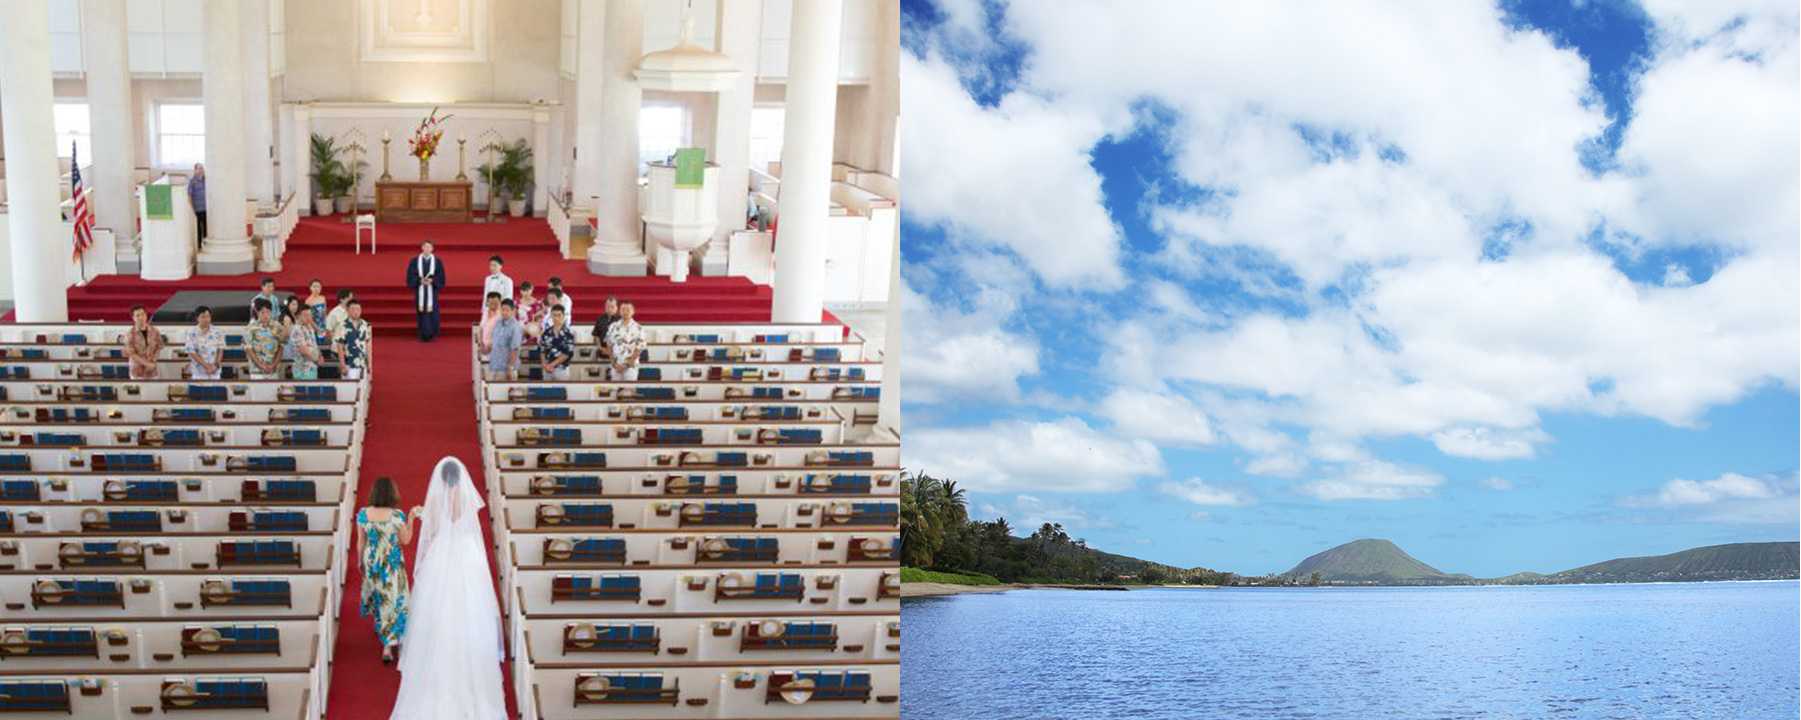 カワイアハオ教会・ハワイのビーチ